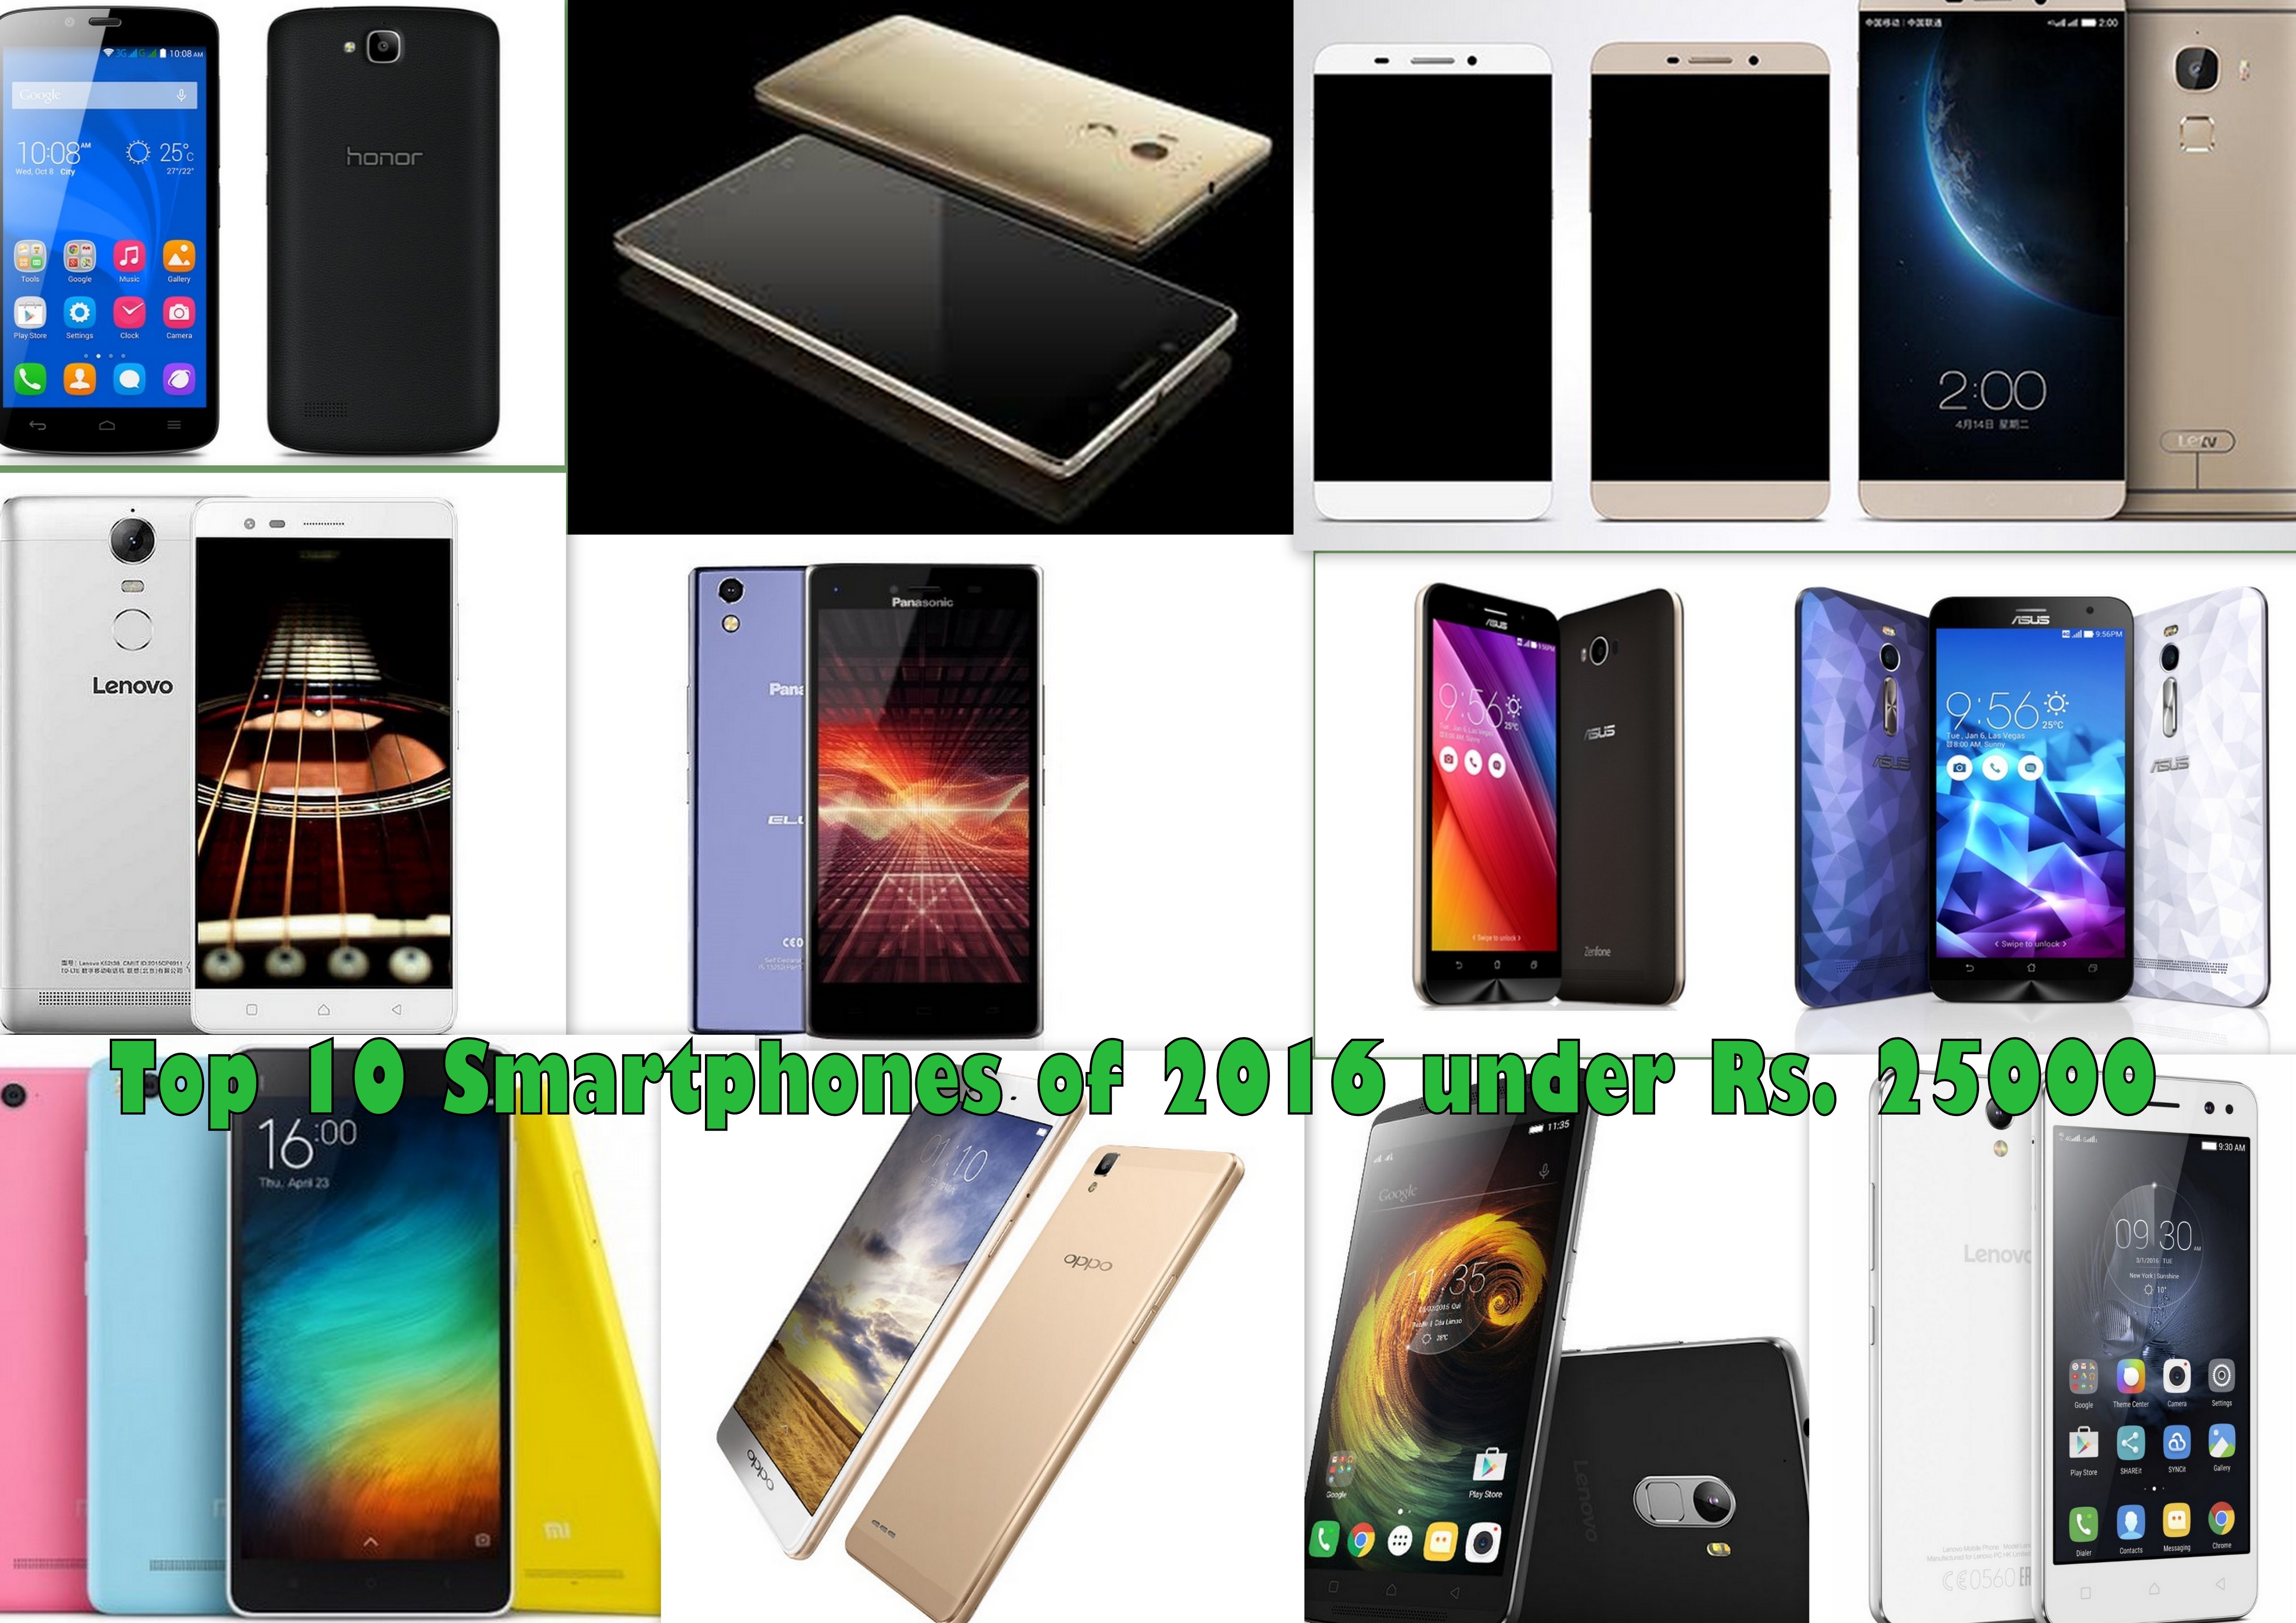 Best 10 Smartphones of 2016 under Rs. 25000